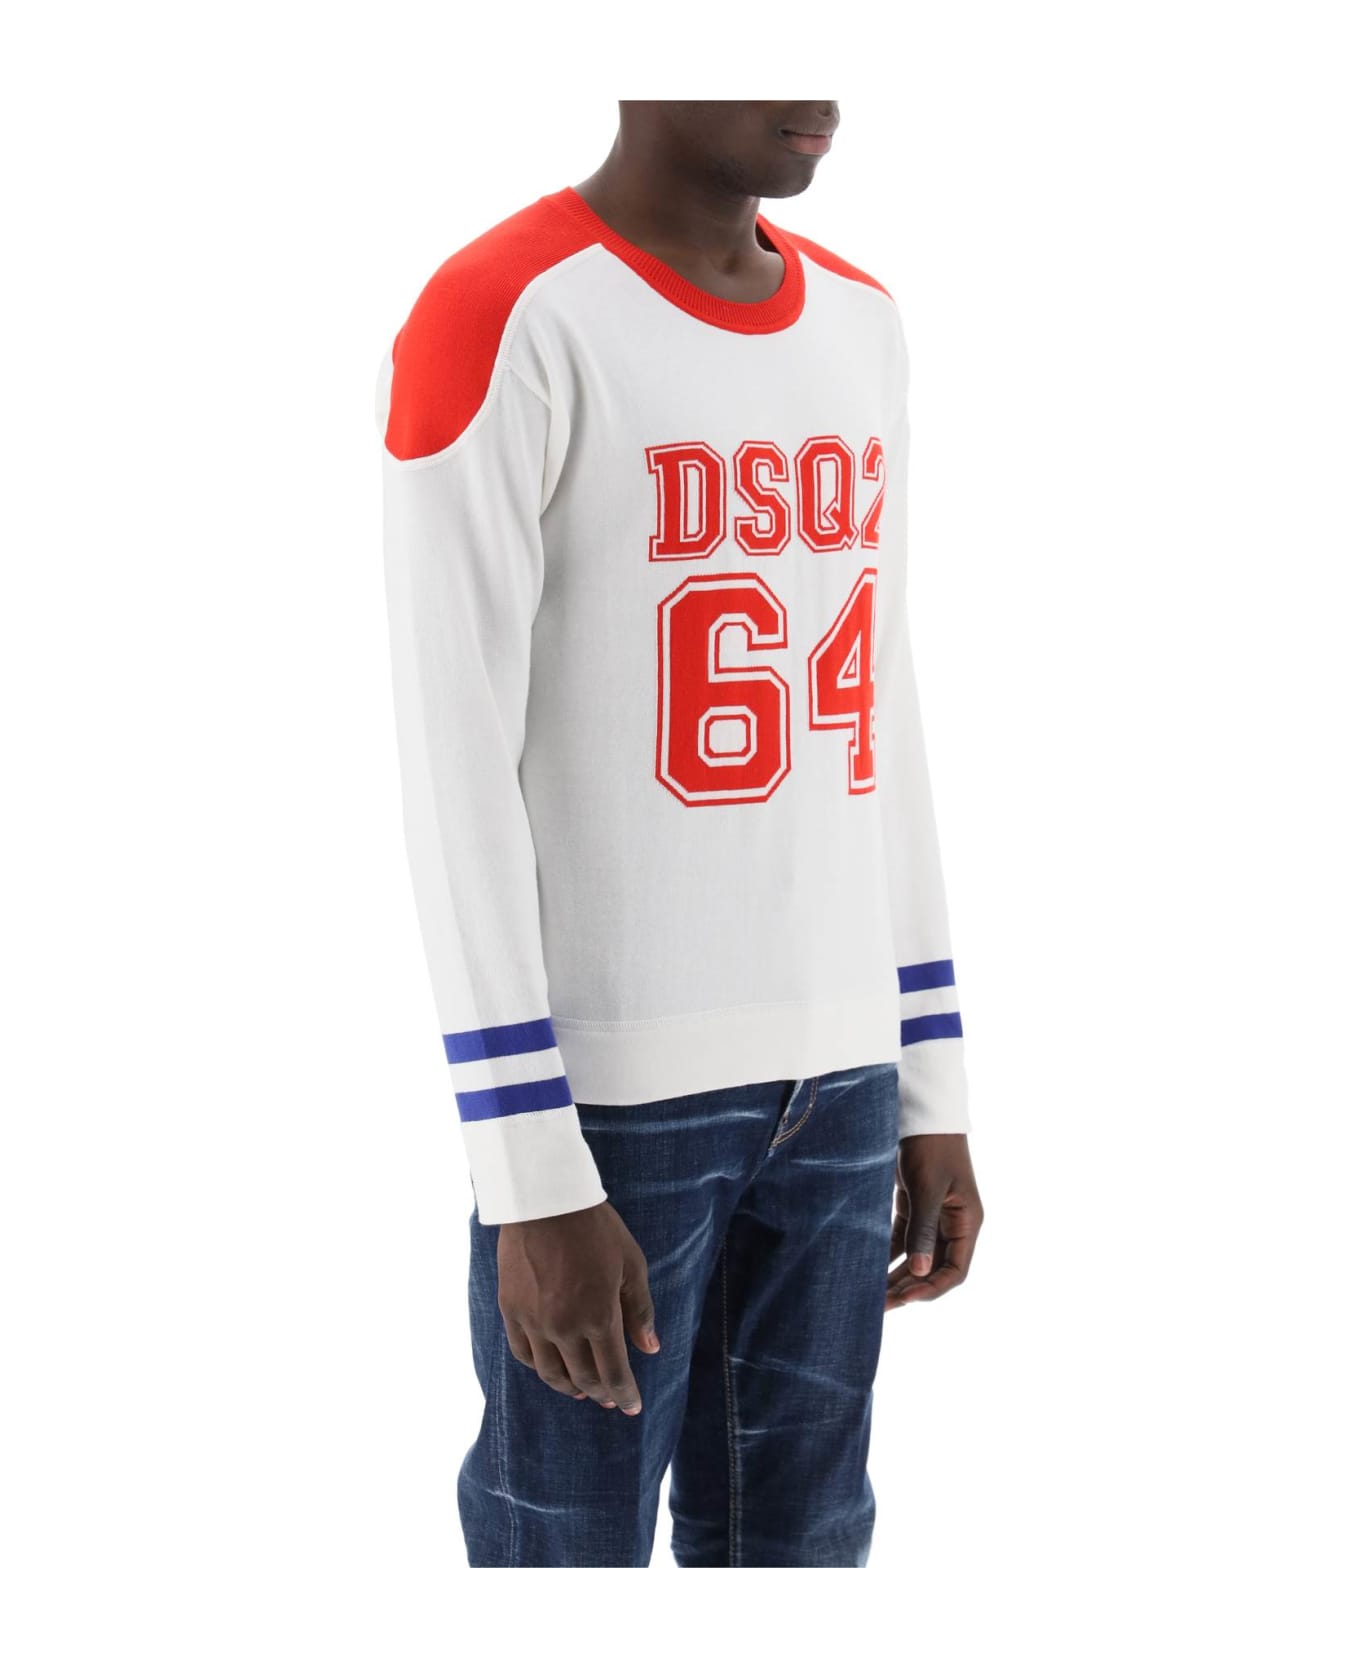 Dsquared2 Dsq2 64 Football Sweater - WHITE (White) ニットウェア